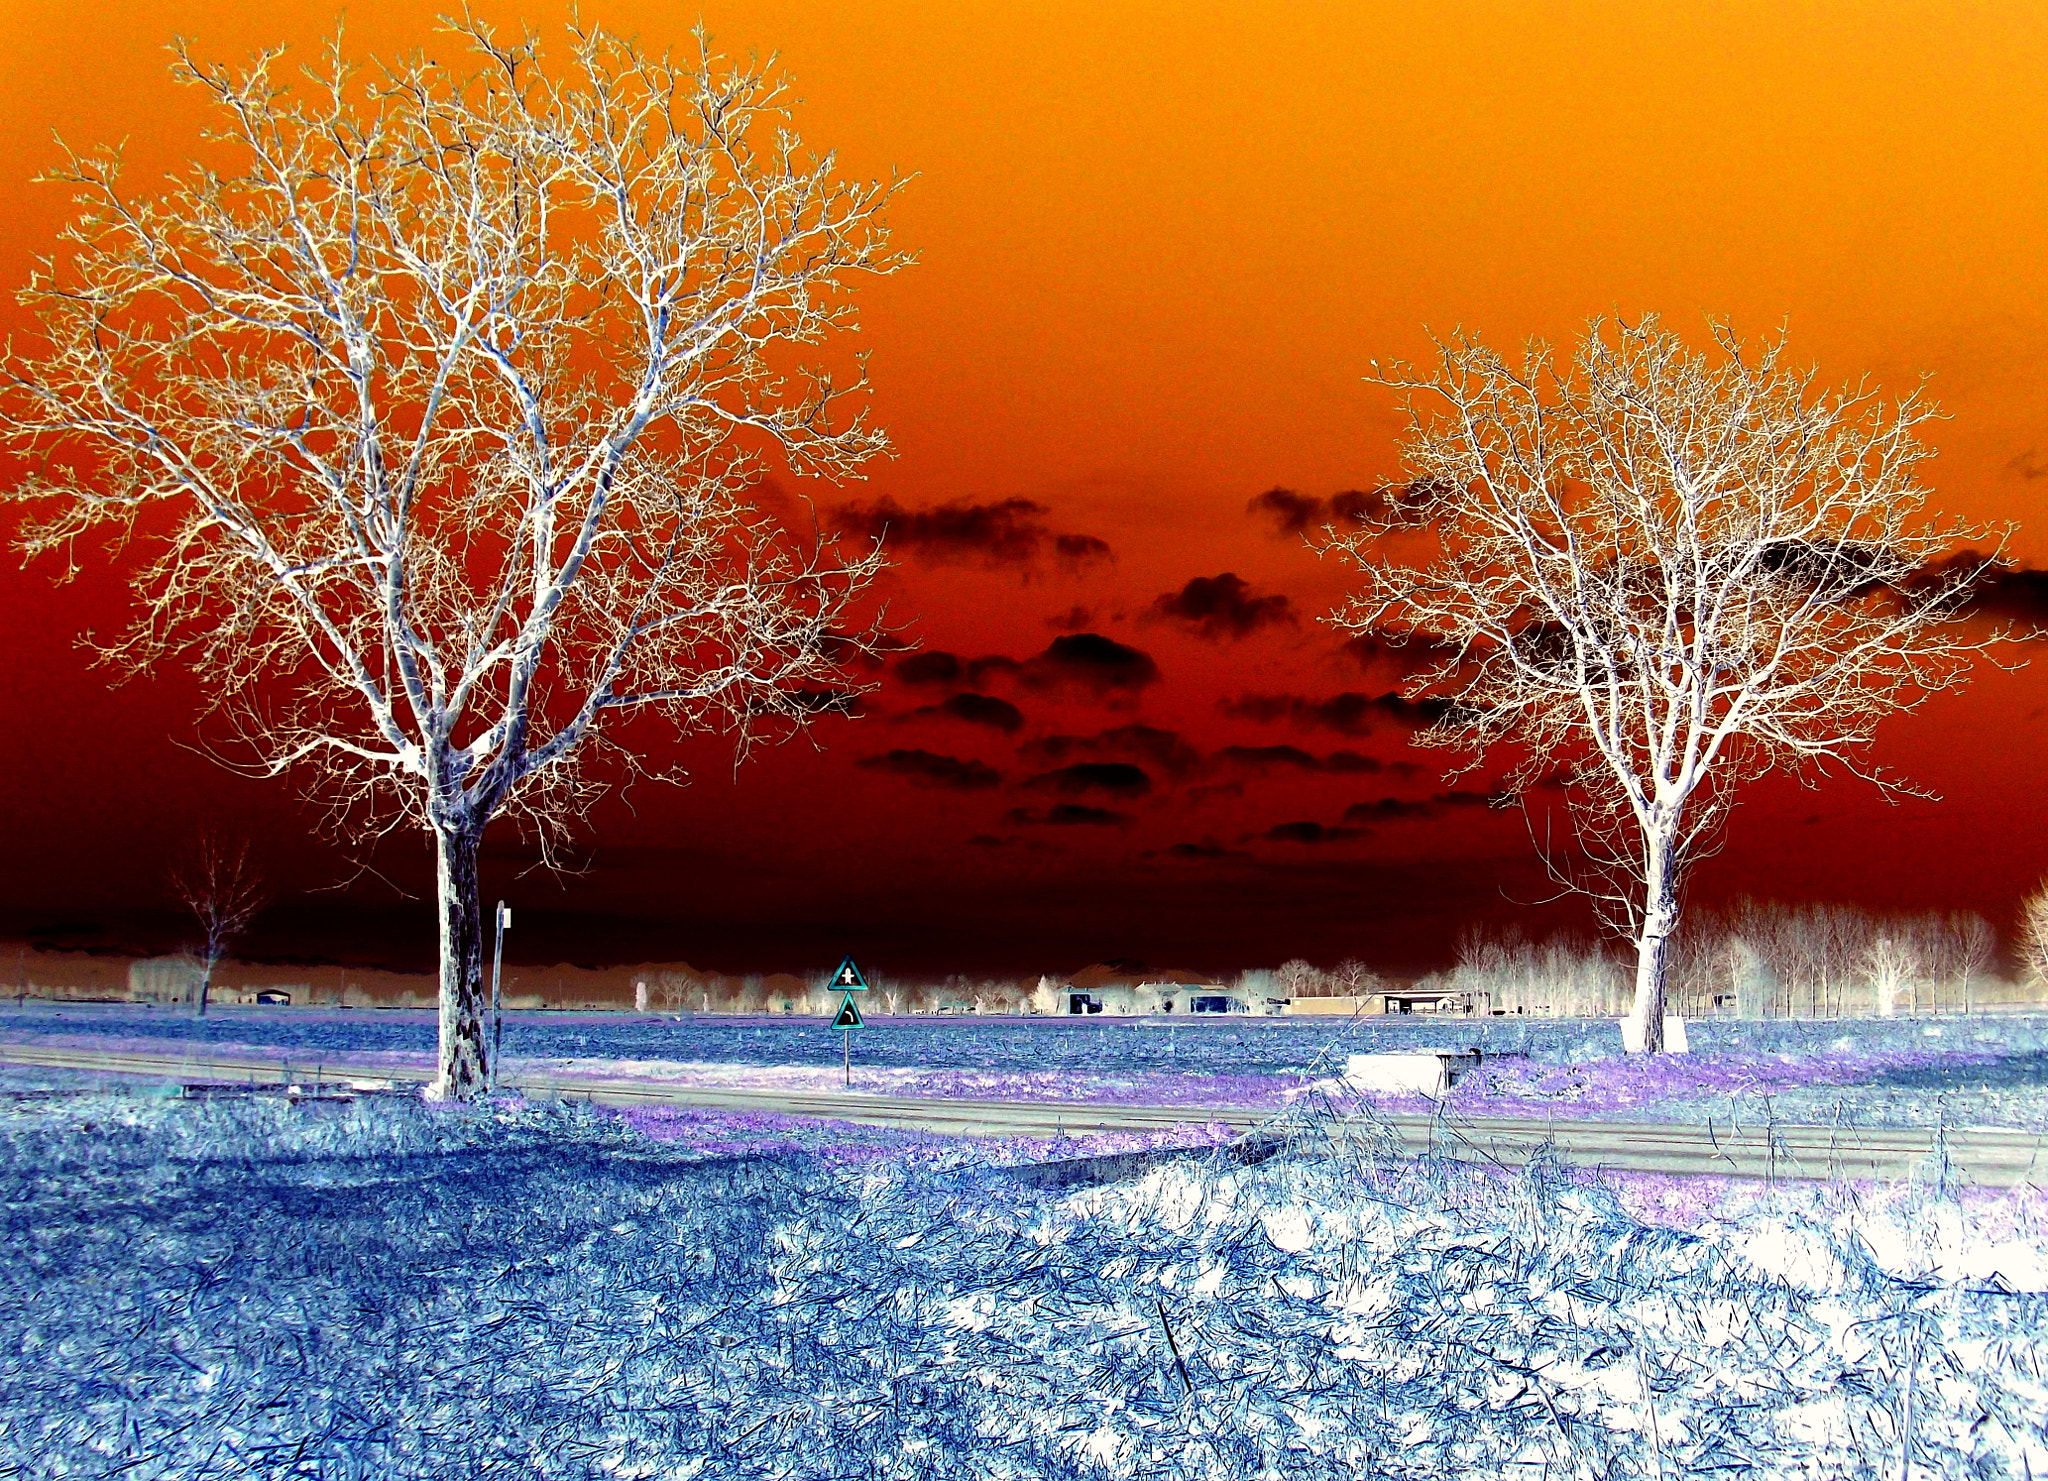 Fujifilm FinePix JX250 sample photo. Da gian, paesaggio invernale al tramonto, meravigliosa natura. personalizzata! photography